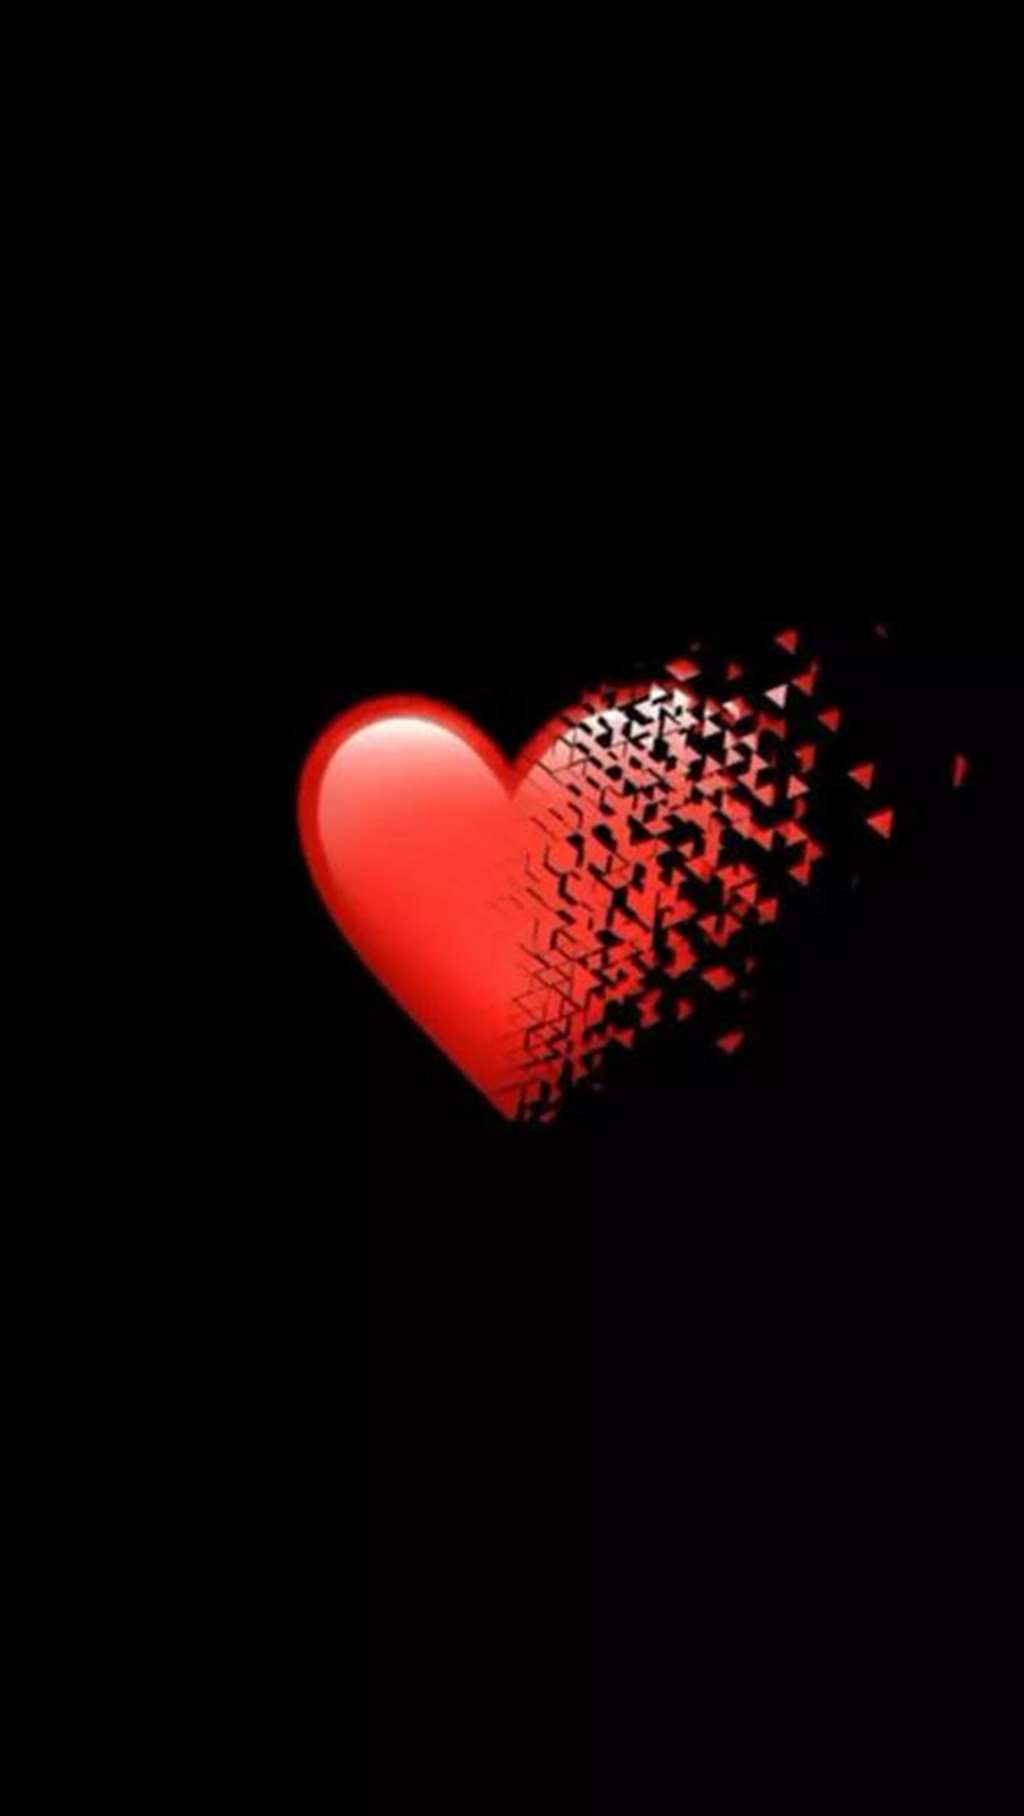 最近抖音上非常流行一套像极了爱情的心碎图片,一颗红色的心慢慢